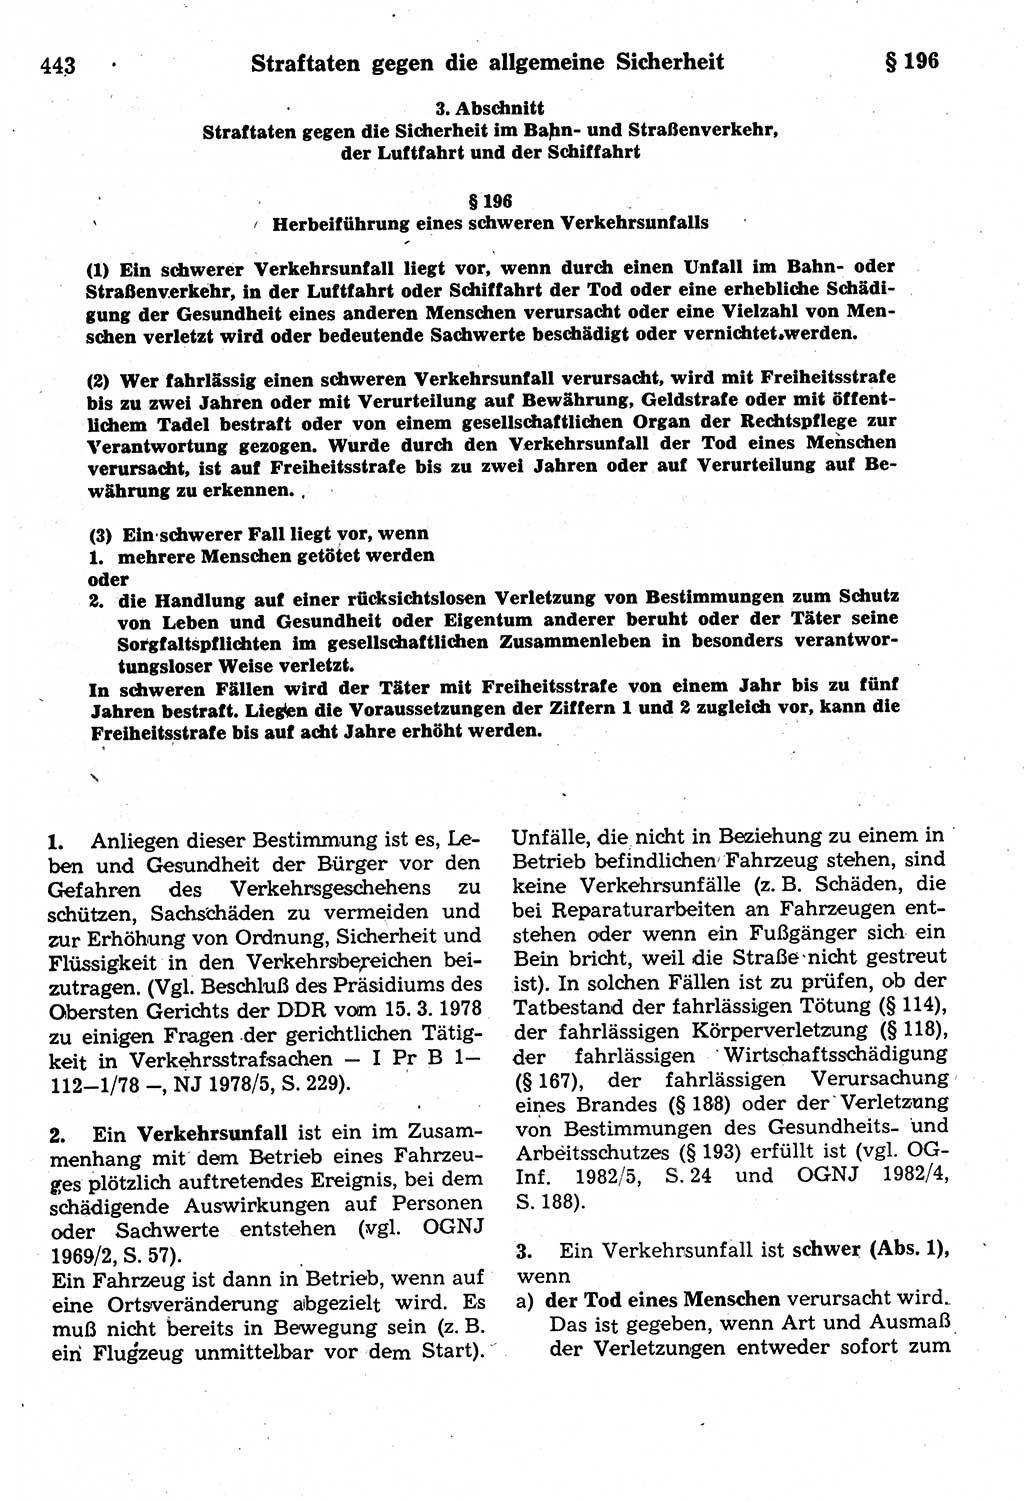 Strafrecht der Deutschen Demokratischen Republik (DDR), Kommentar zum Strafgesetzbuch (StGB) 1987, Seite 443 (Strafr. DDR Komm. StGB 1987, S. 443)